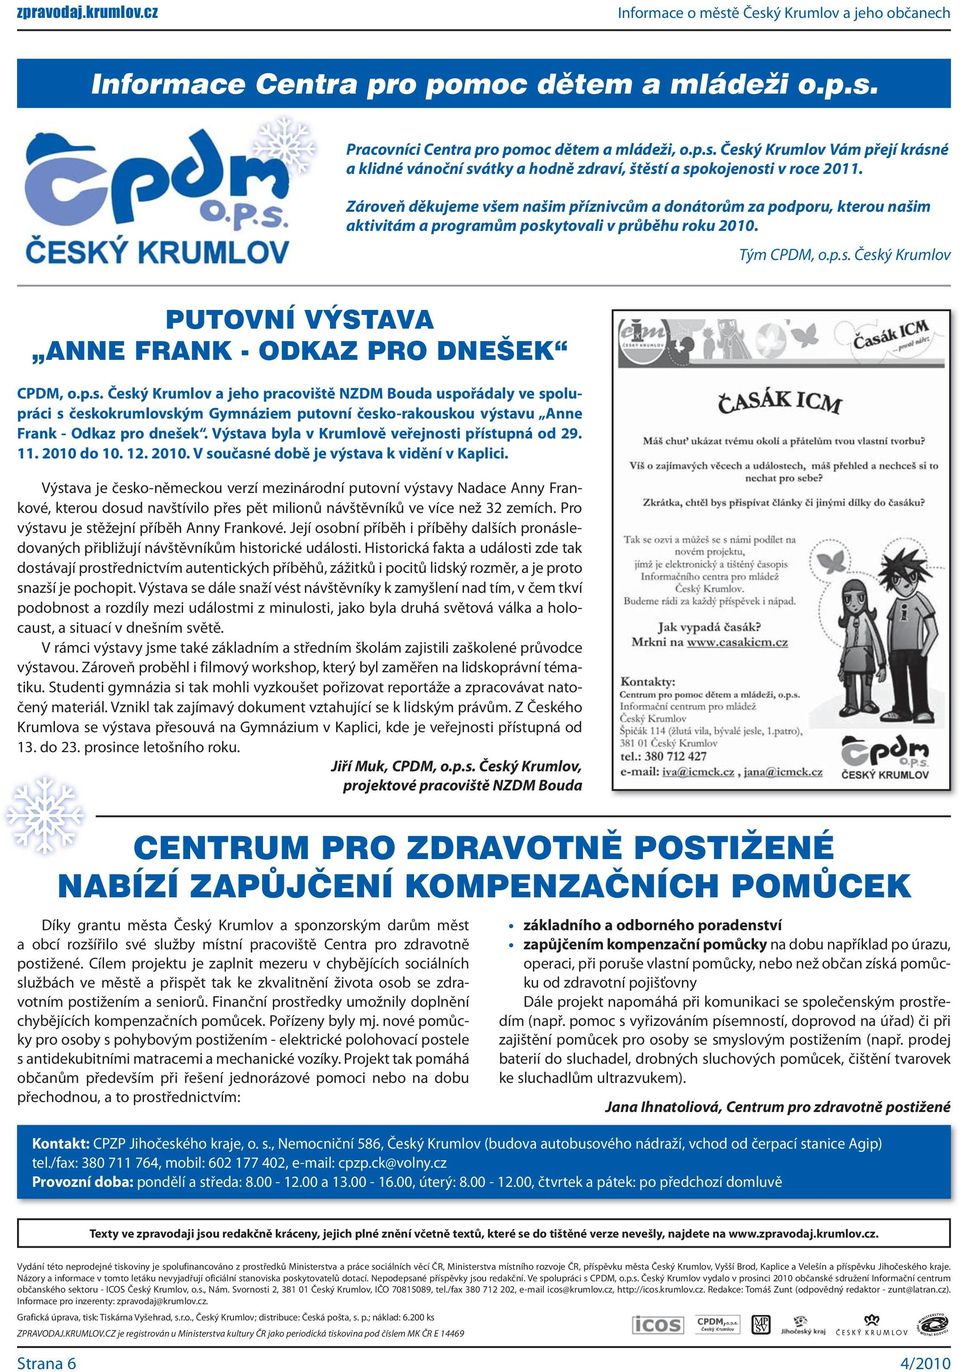 p.s. Český Krumlov a jeho pracoviště NZDM Bouda uspořádaly ve spolupráci s českokrumlovským Gymnáziem putovní česko-rakouskou výstavu Anne Frank - Odkaz pro dnešek.